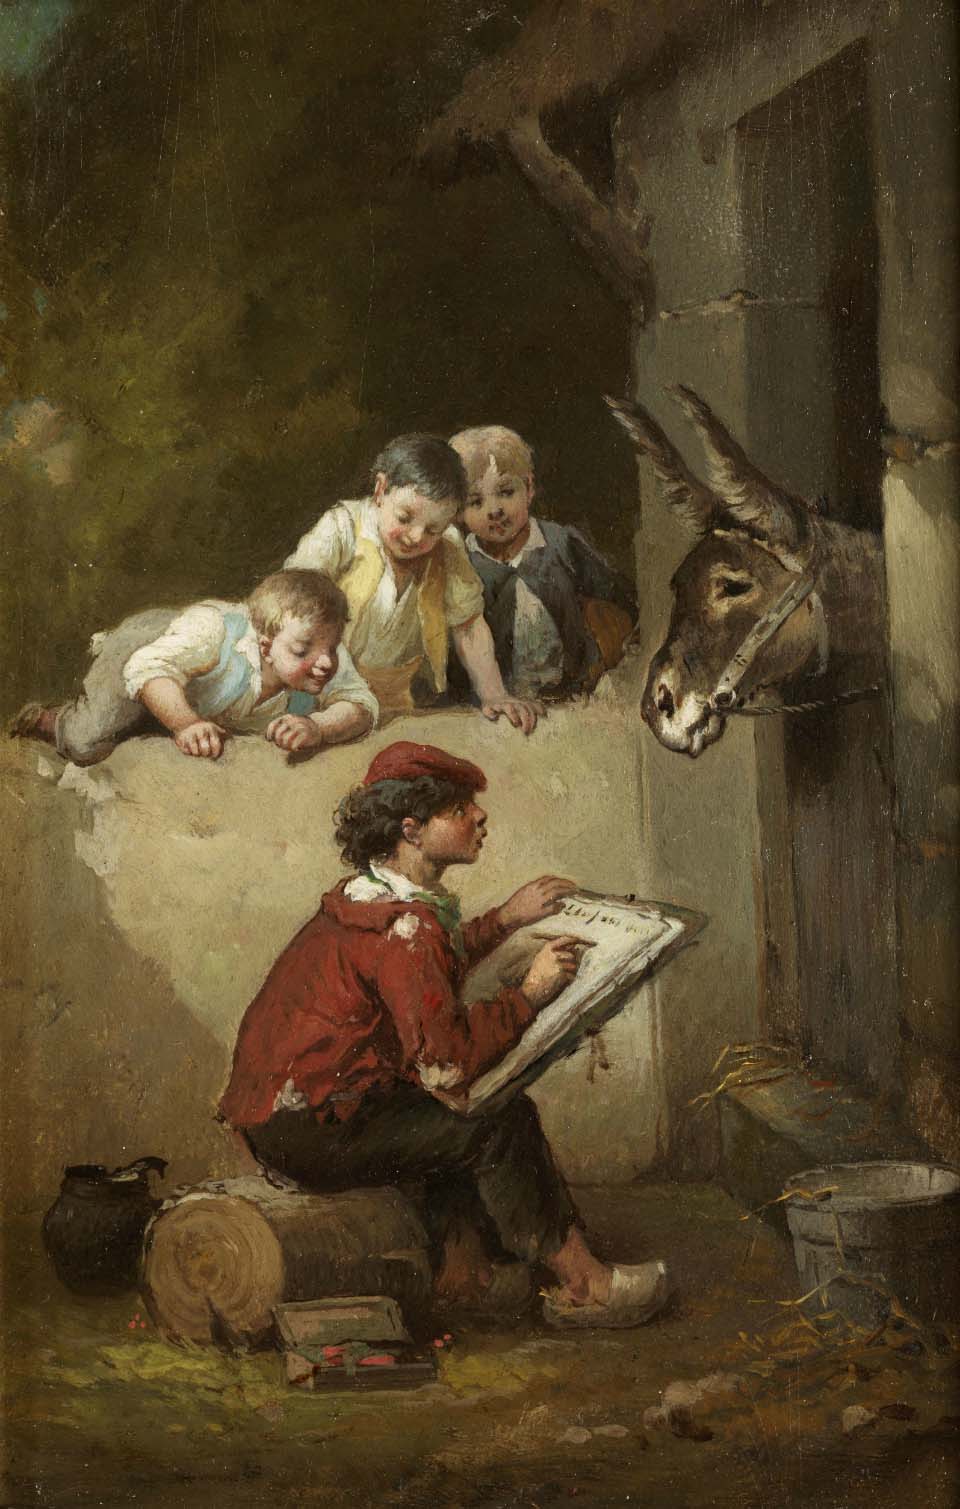 Le jeune peintre